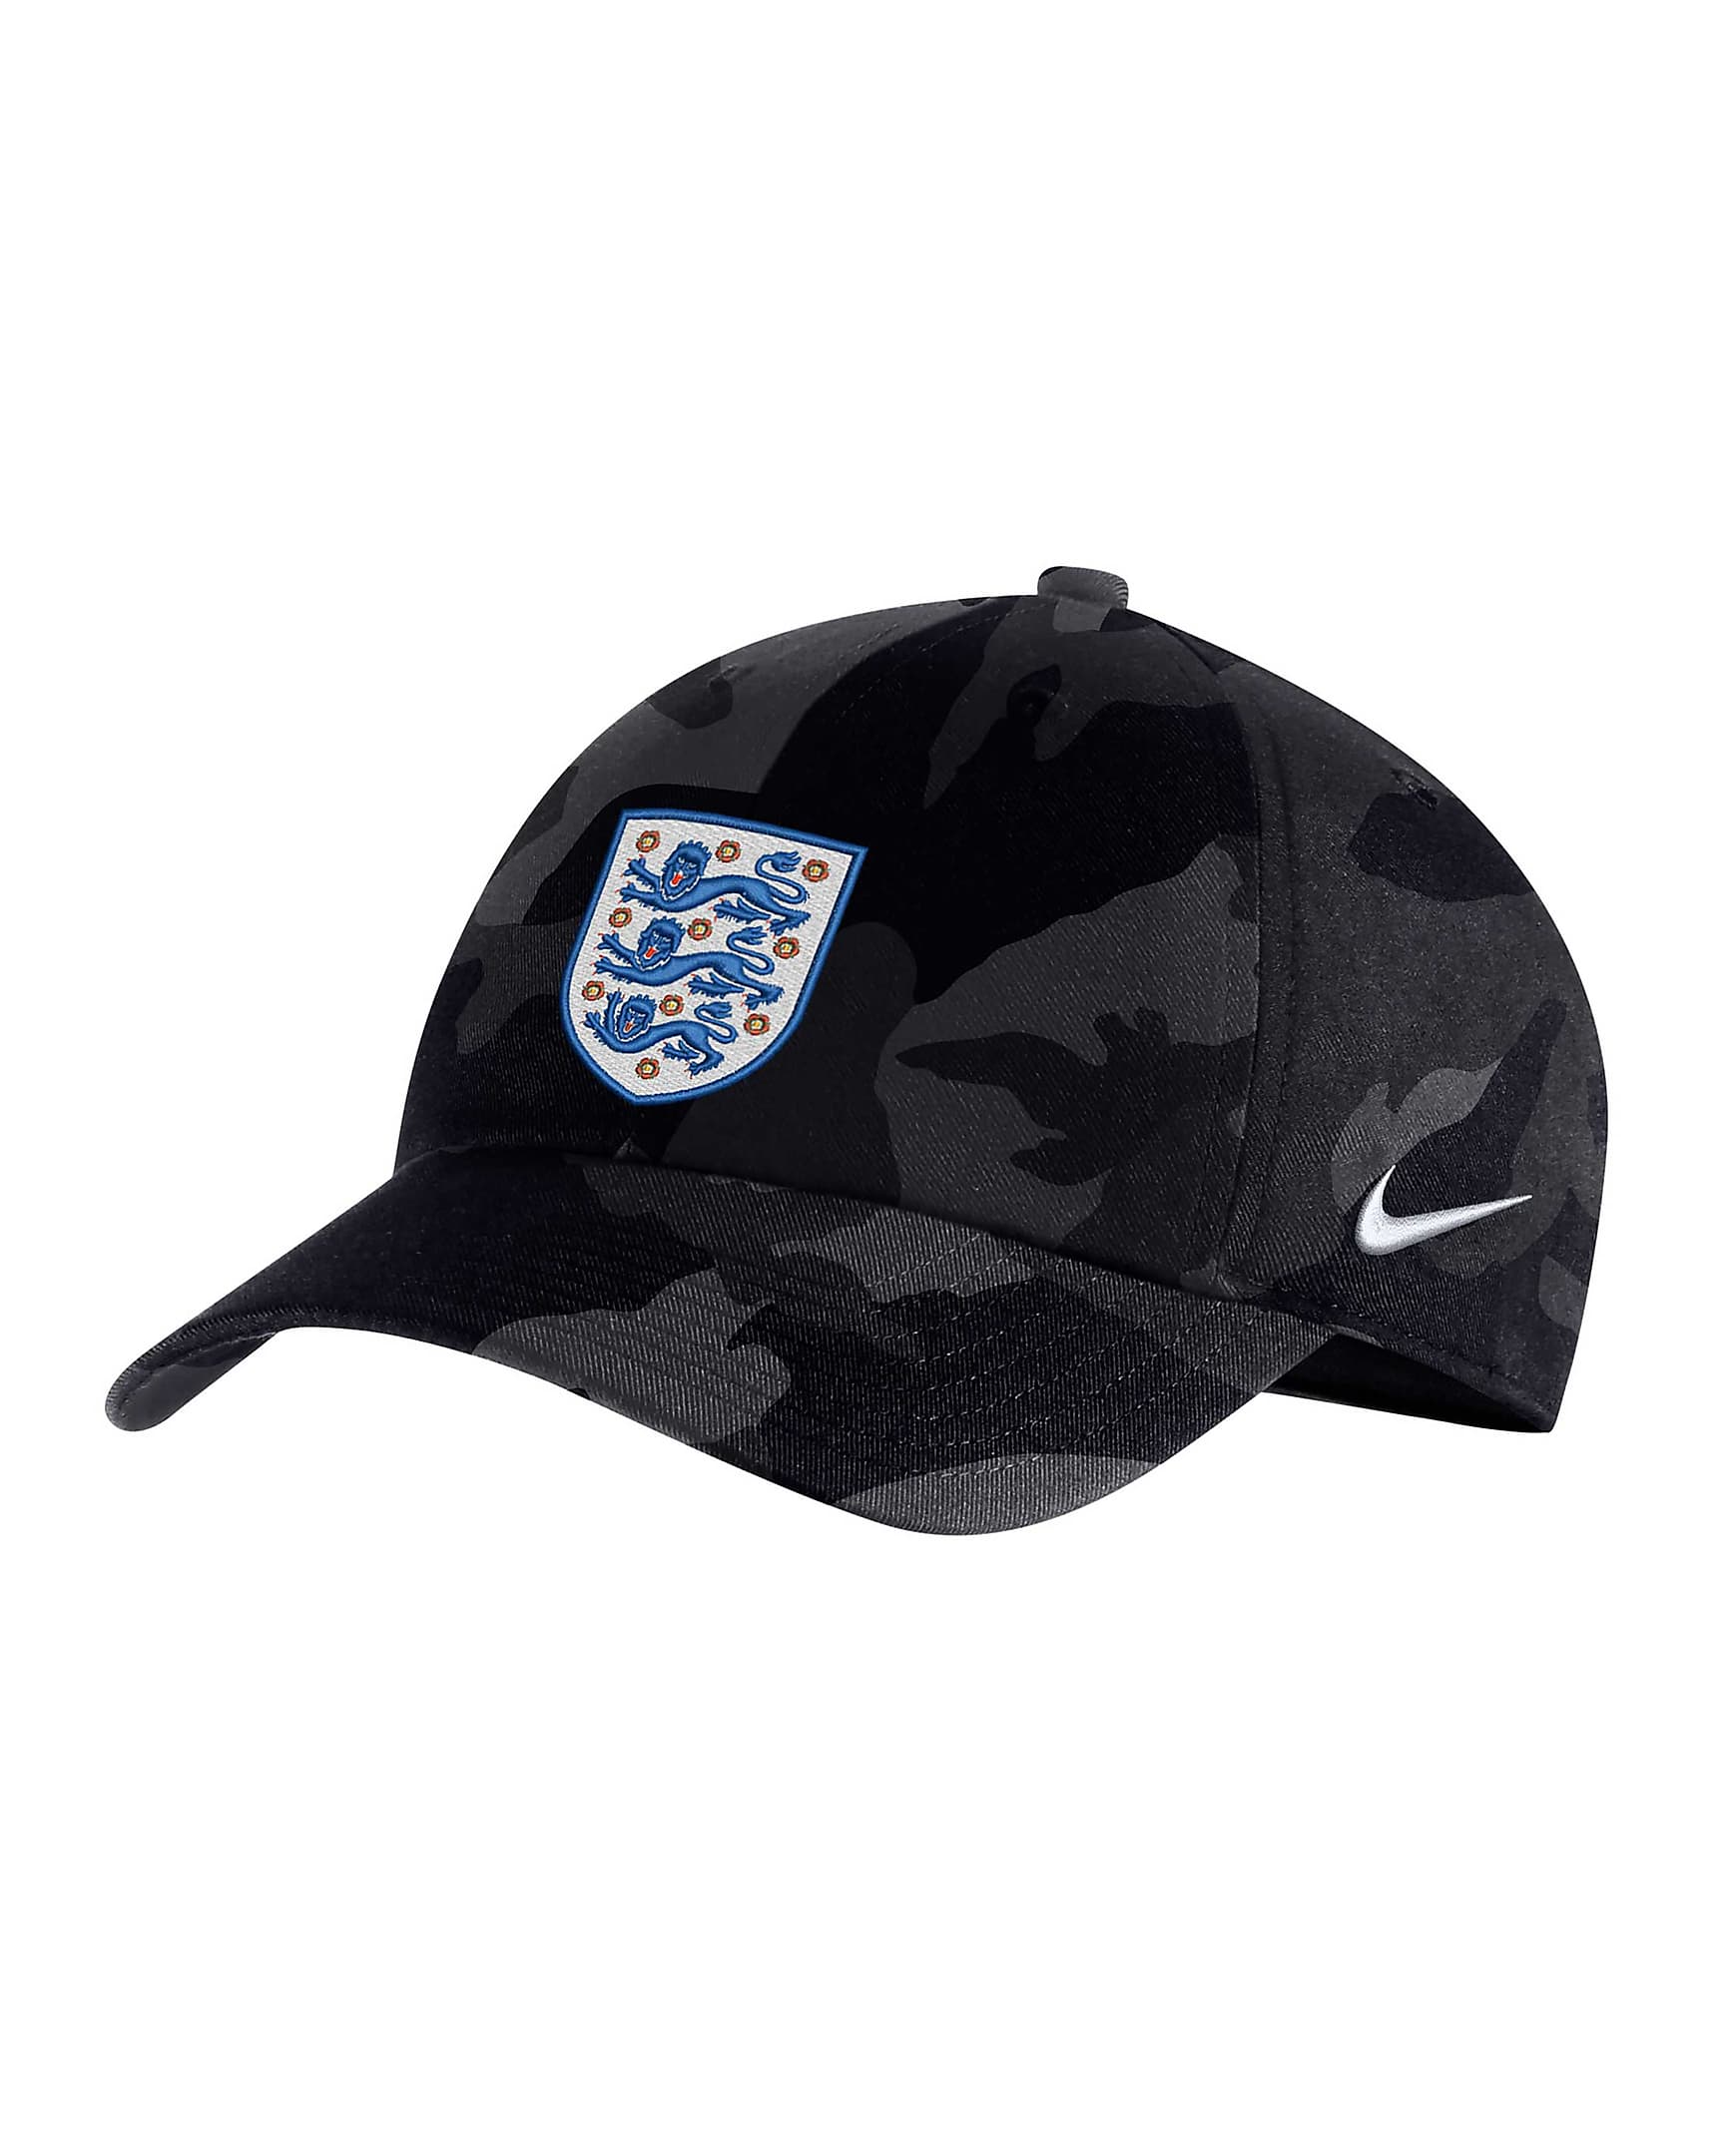 England Heritage86 Men's Adjustable Hat. Nike.com